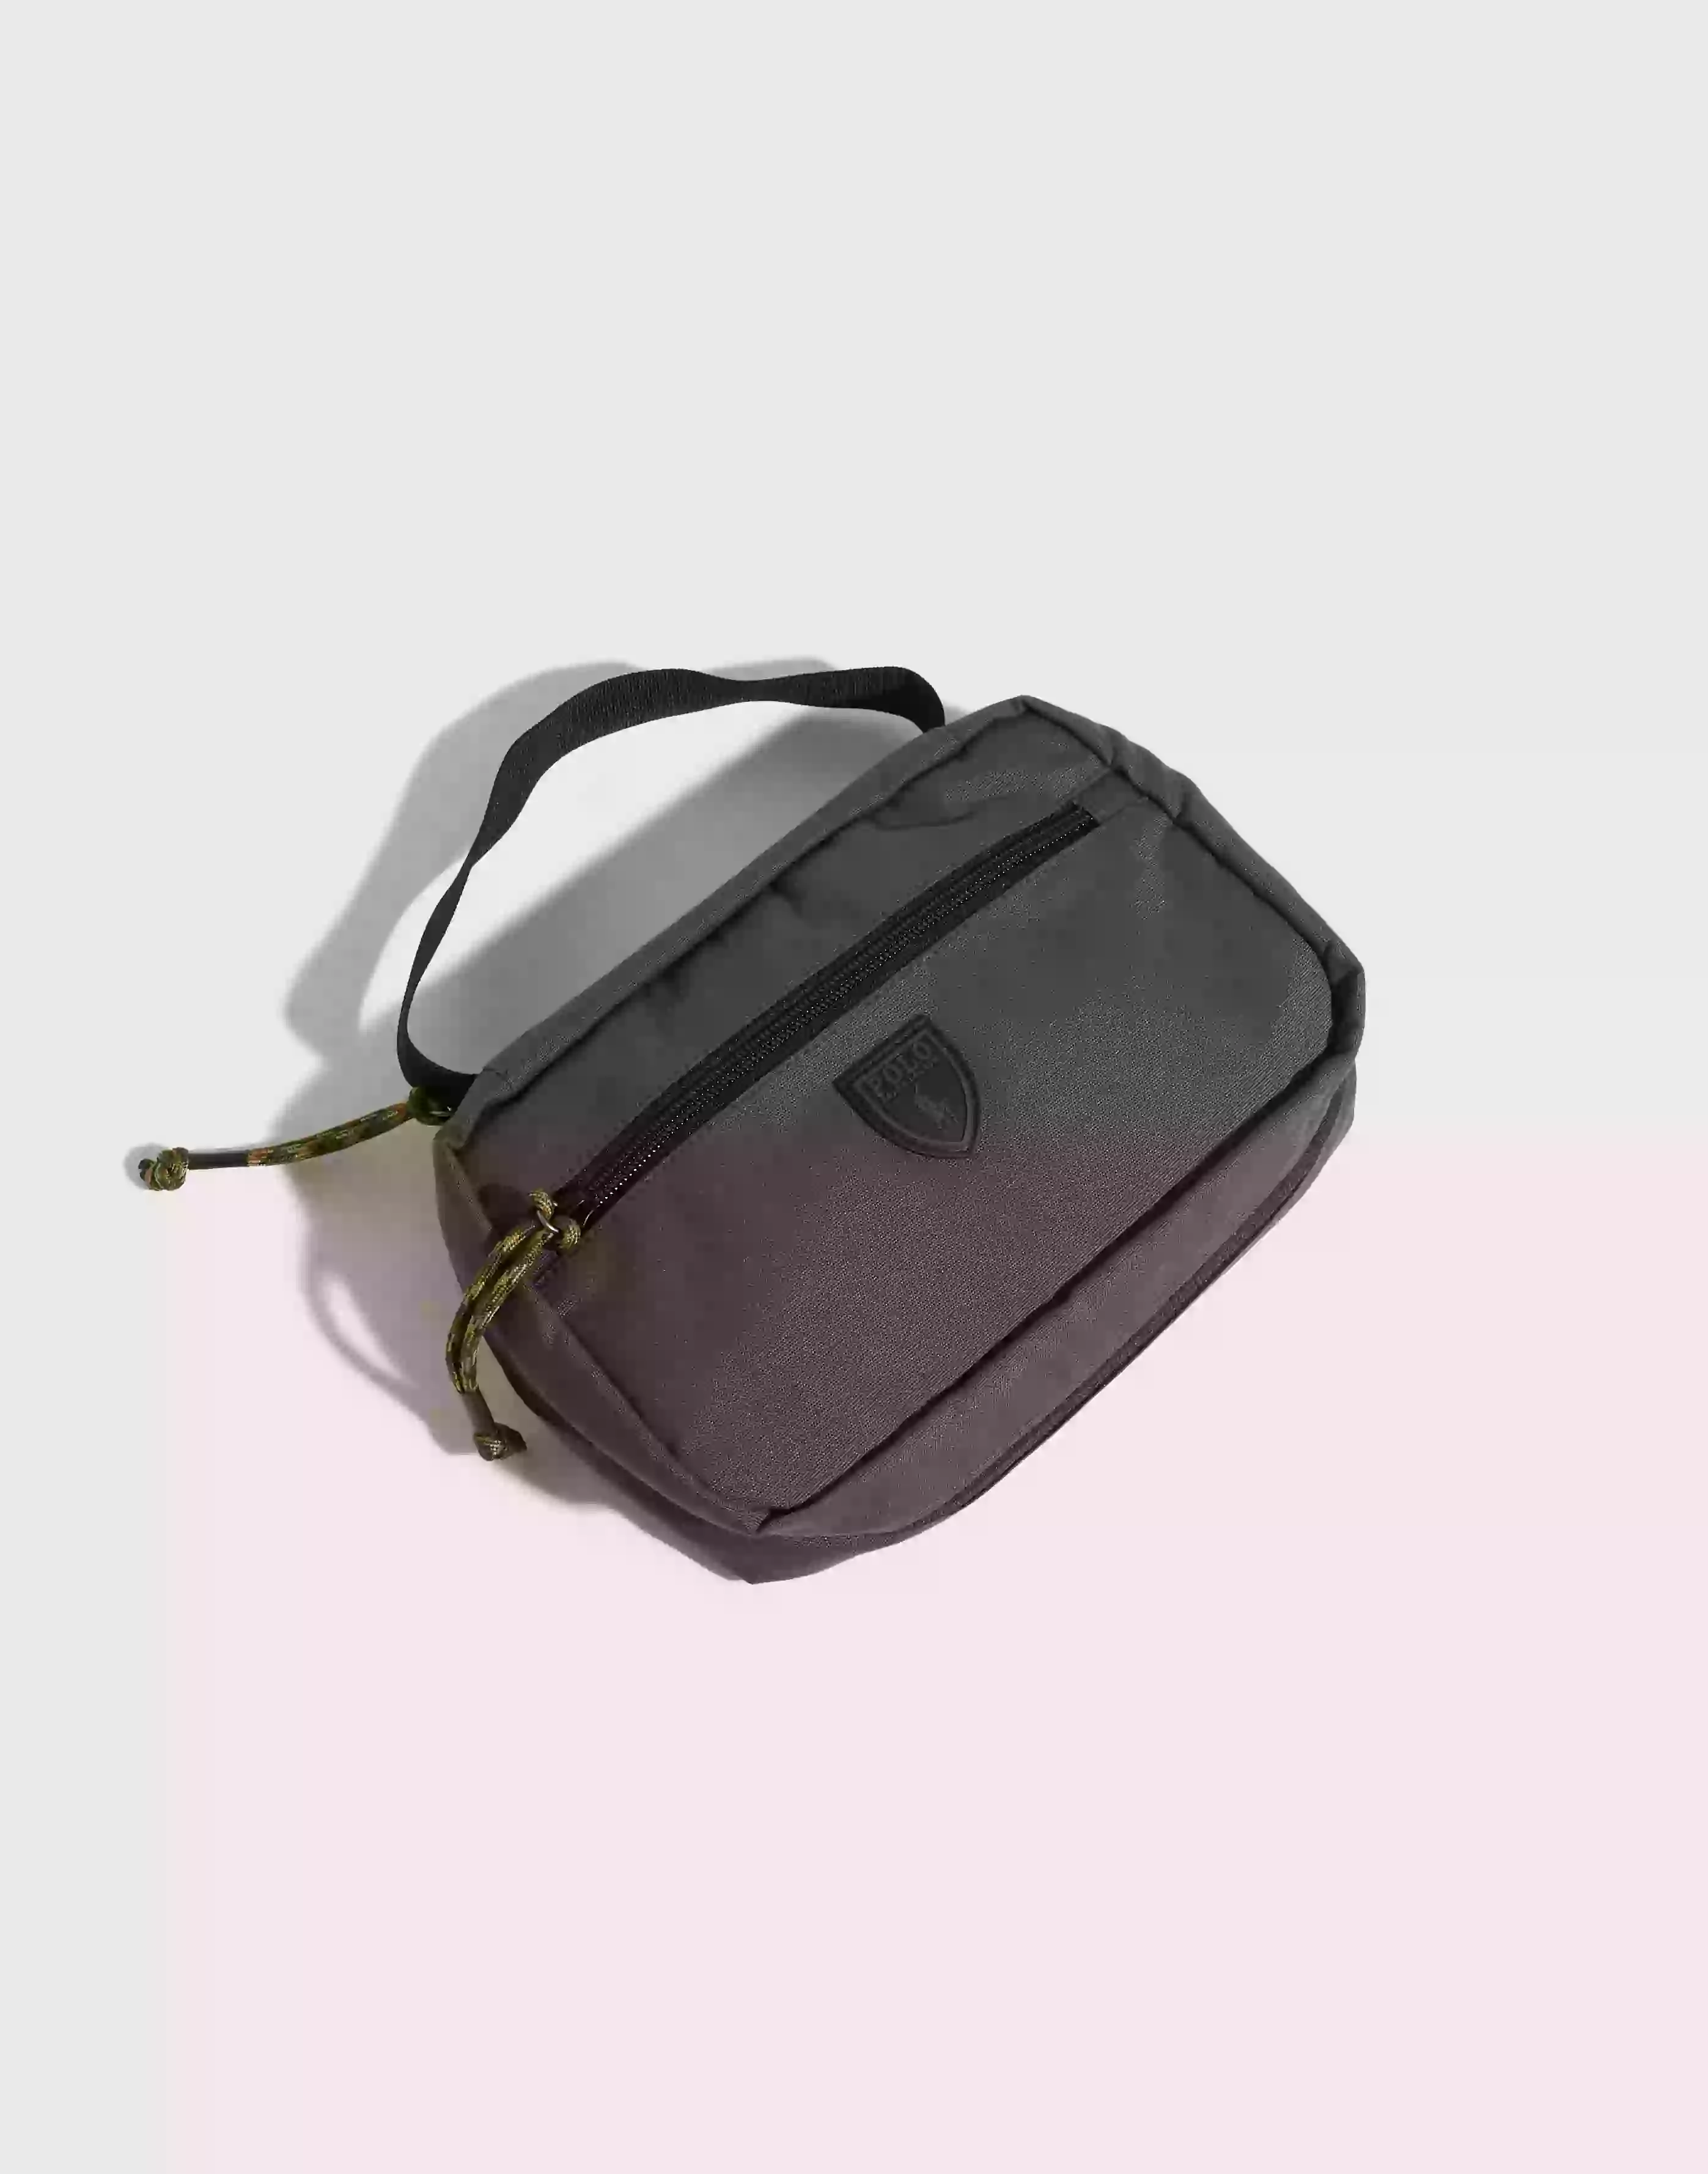 Polo Ralph Lauren Trvl Shv Kit-Media Bag-Small Tasker Grey